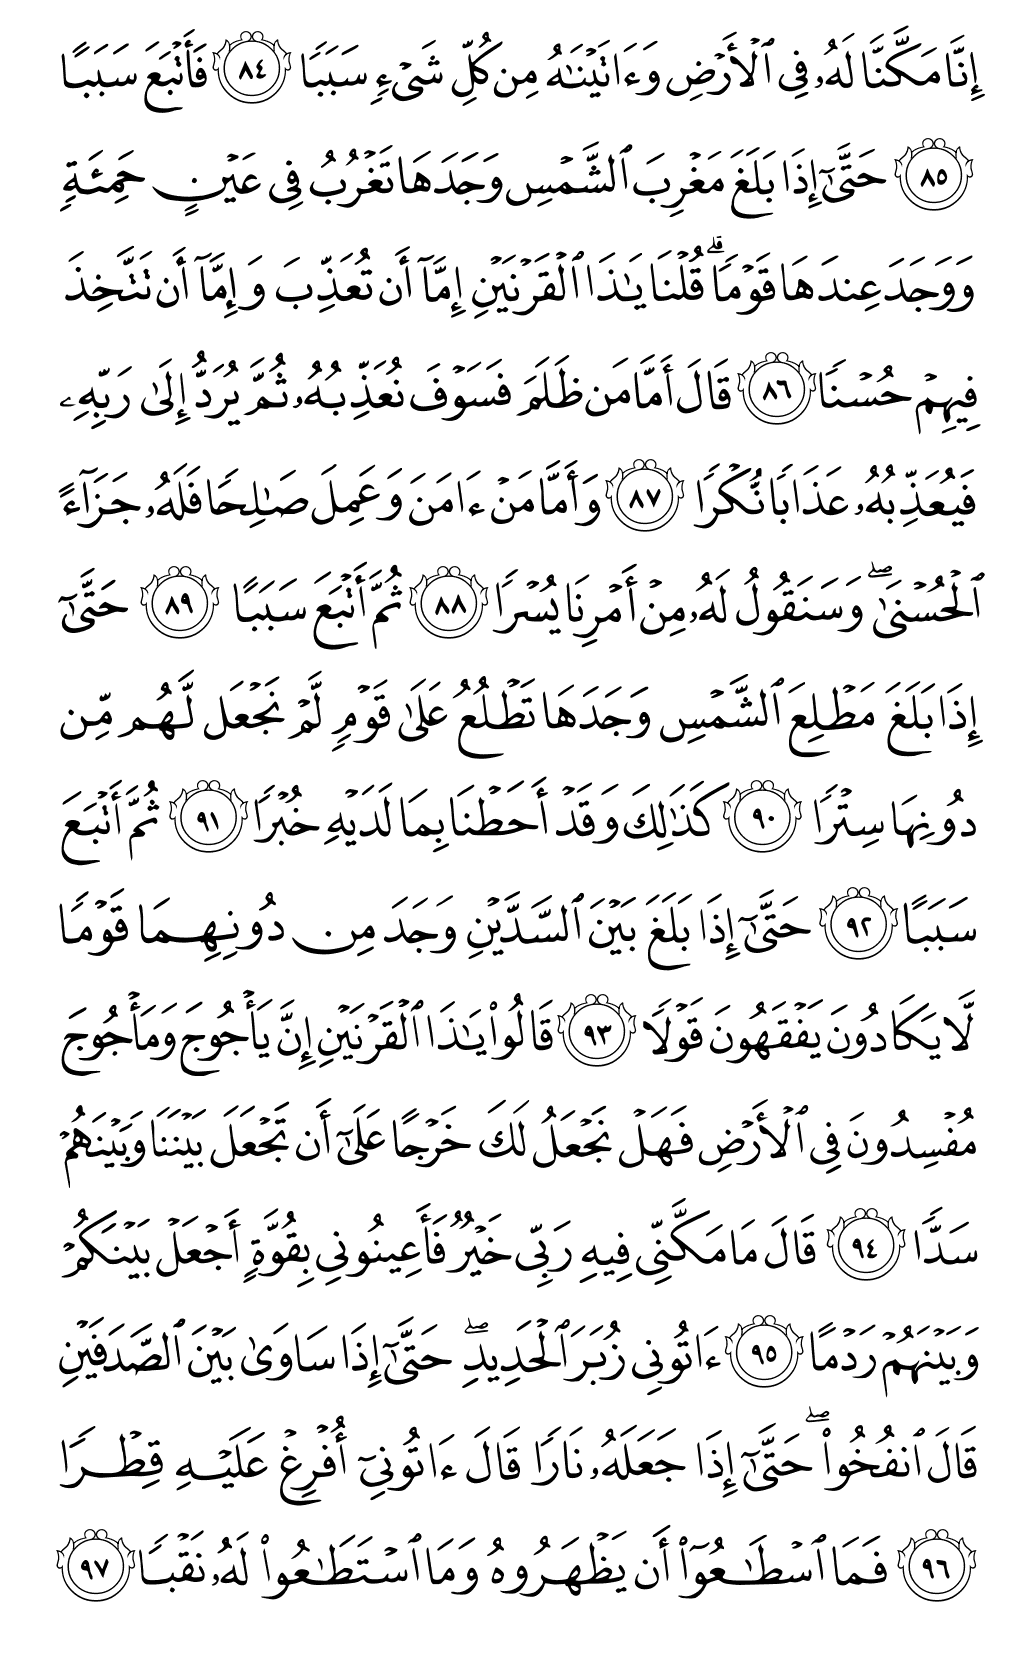 الصفحة رقم 303 من القرآن الكريم